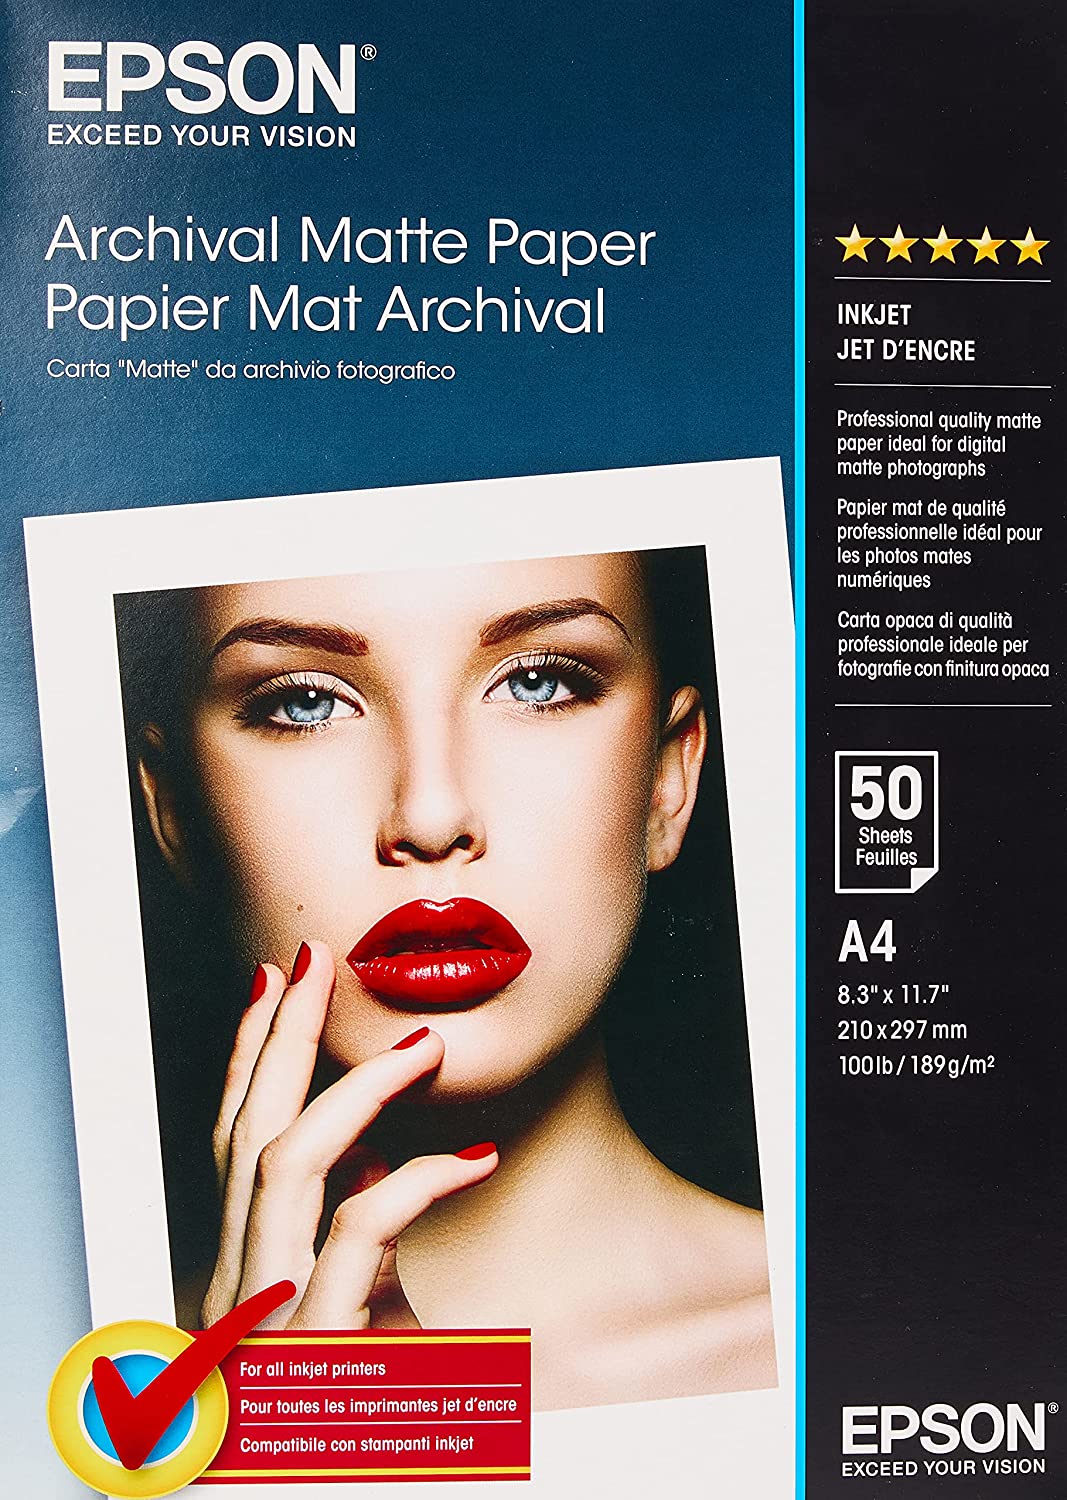 papel mate es un tipo de papel para imprimir fotos